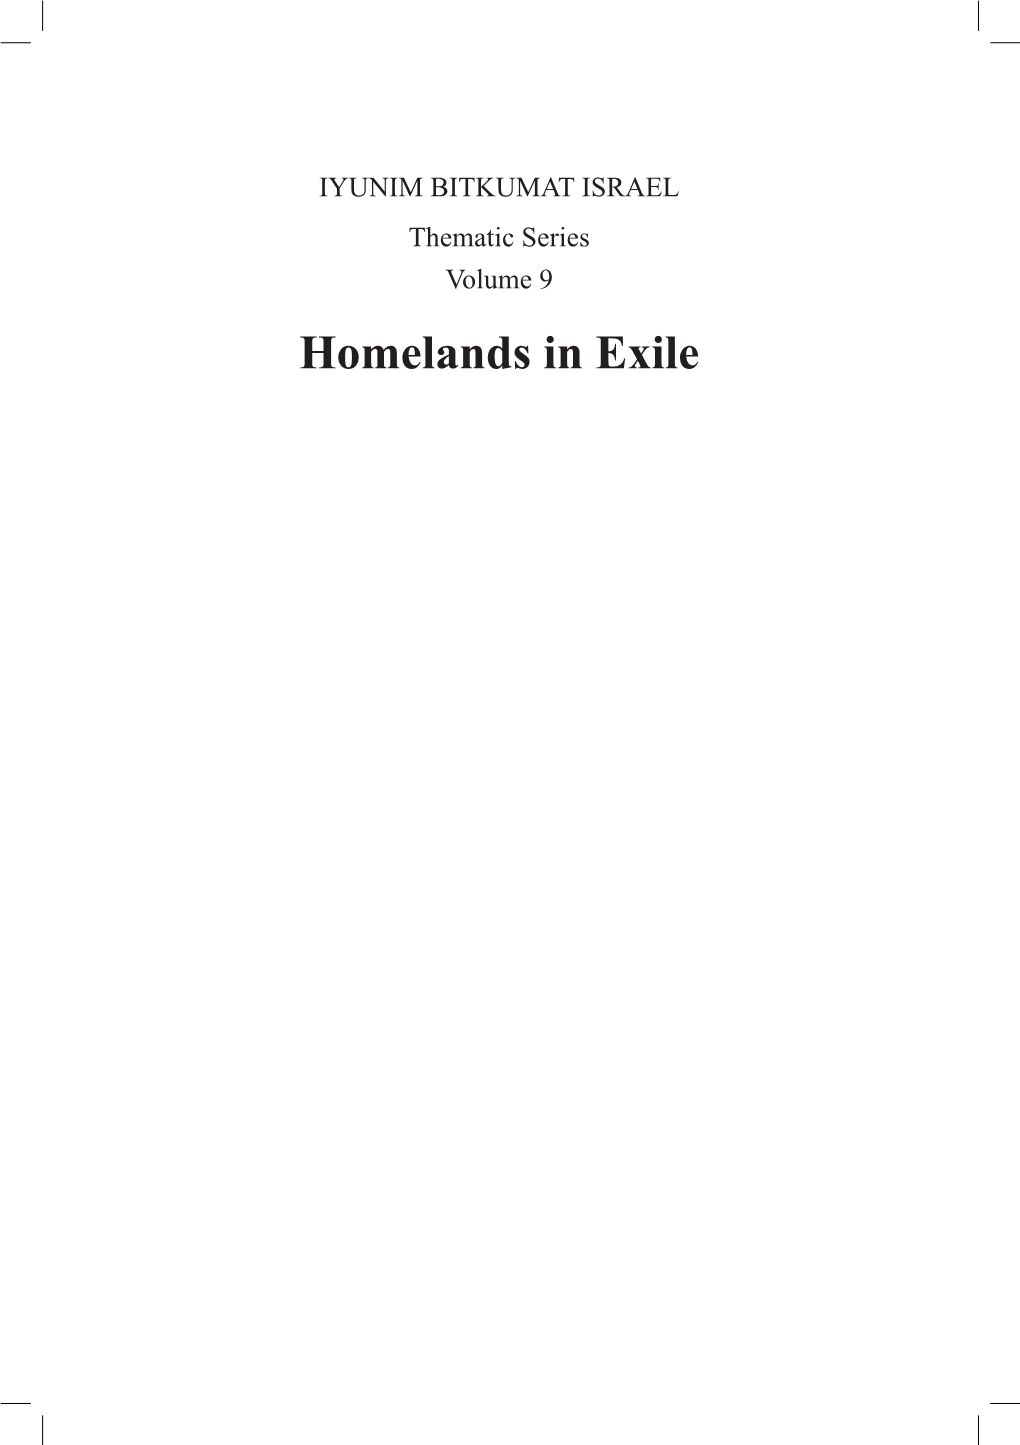 Homelands in Exile